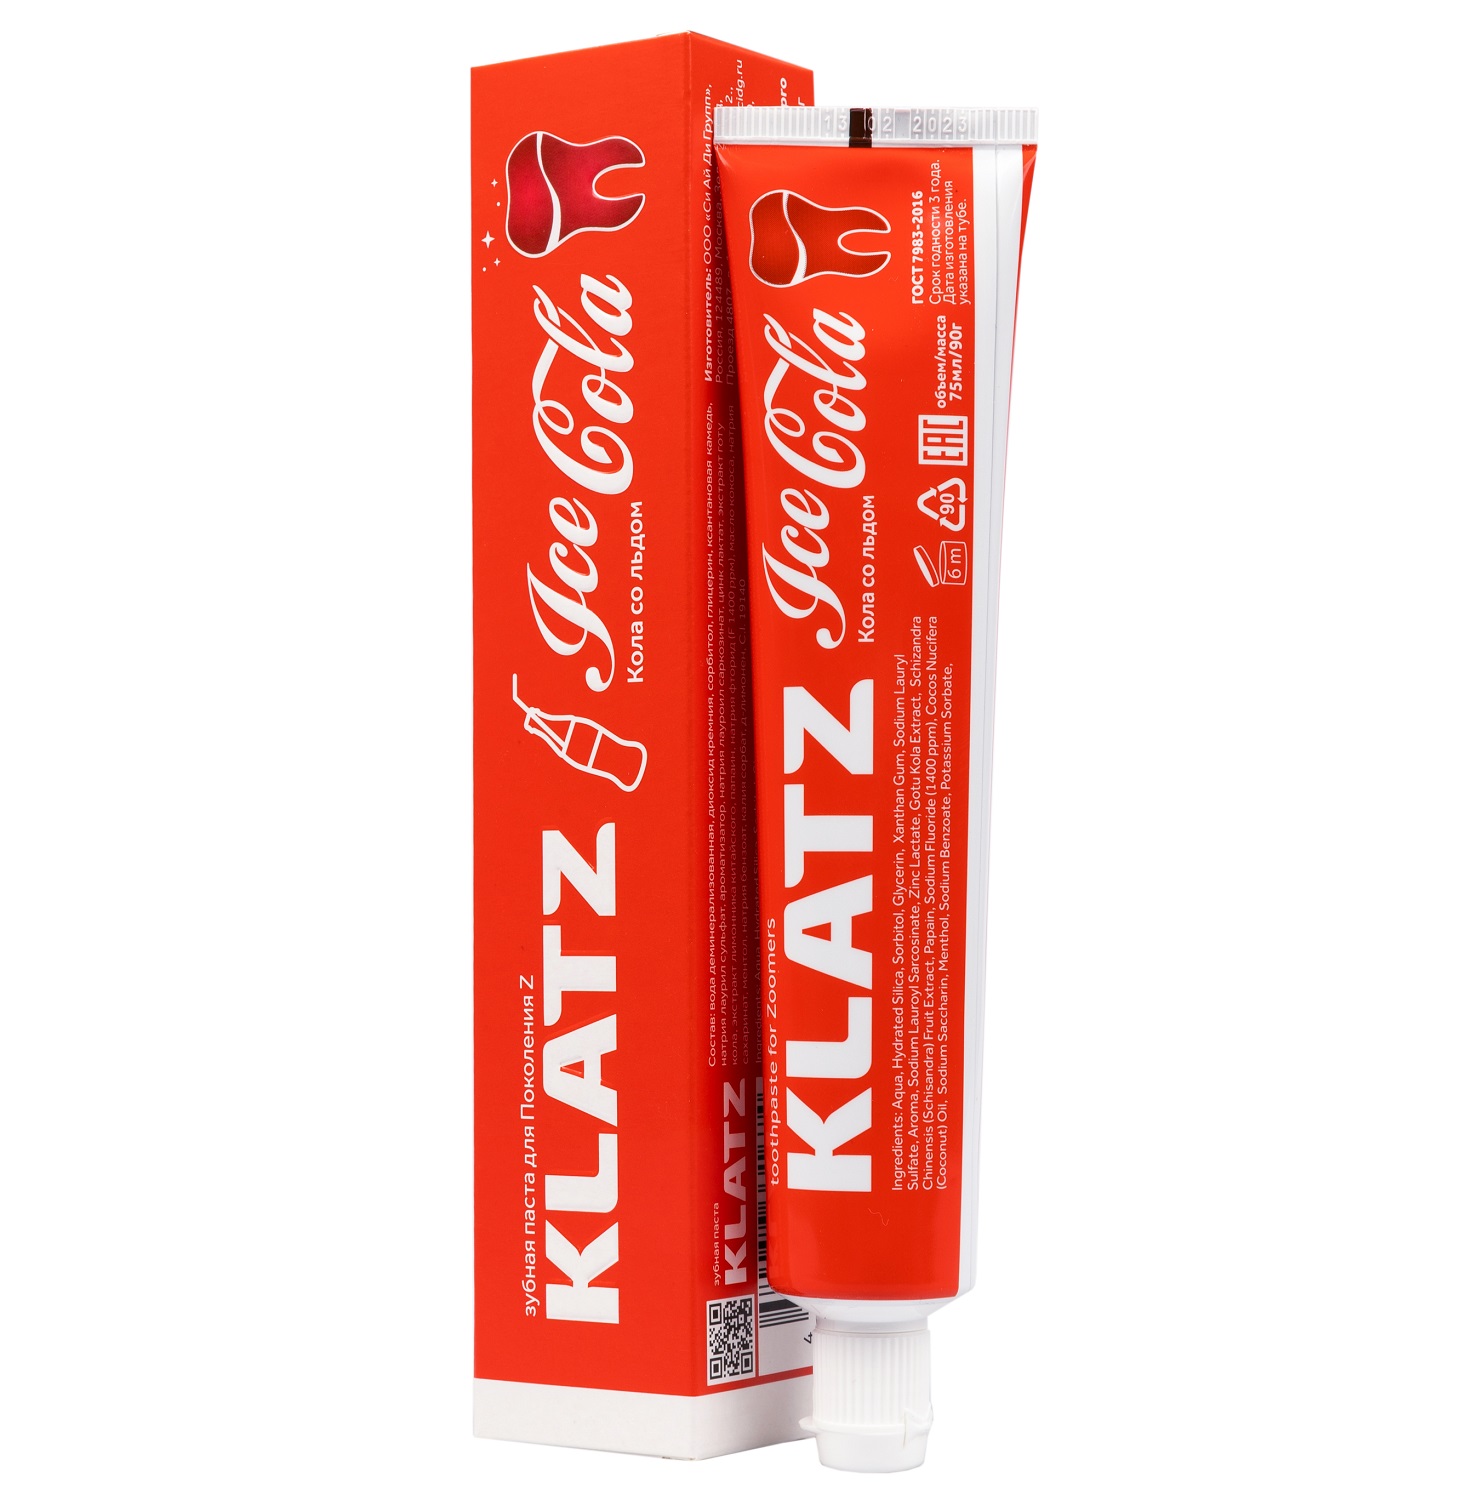 Klatz Зубная паста для поколения Z «Кола со льдом», 75 мл (Klatz, Zoomers) зубная паста 32 жемчужины кола лимон укрепление эмали детская 75г